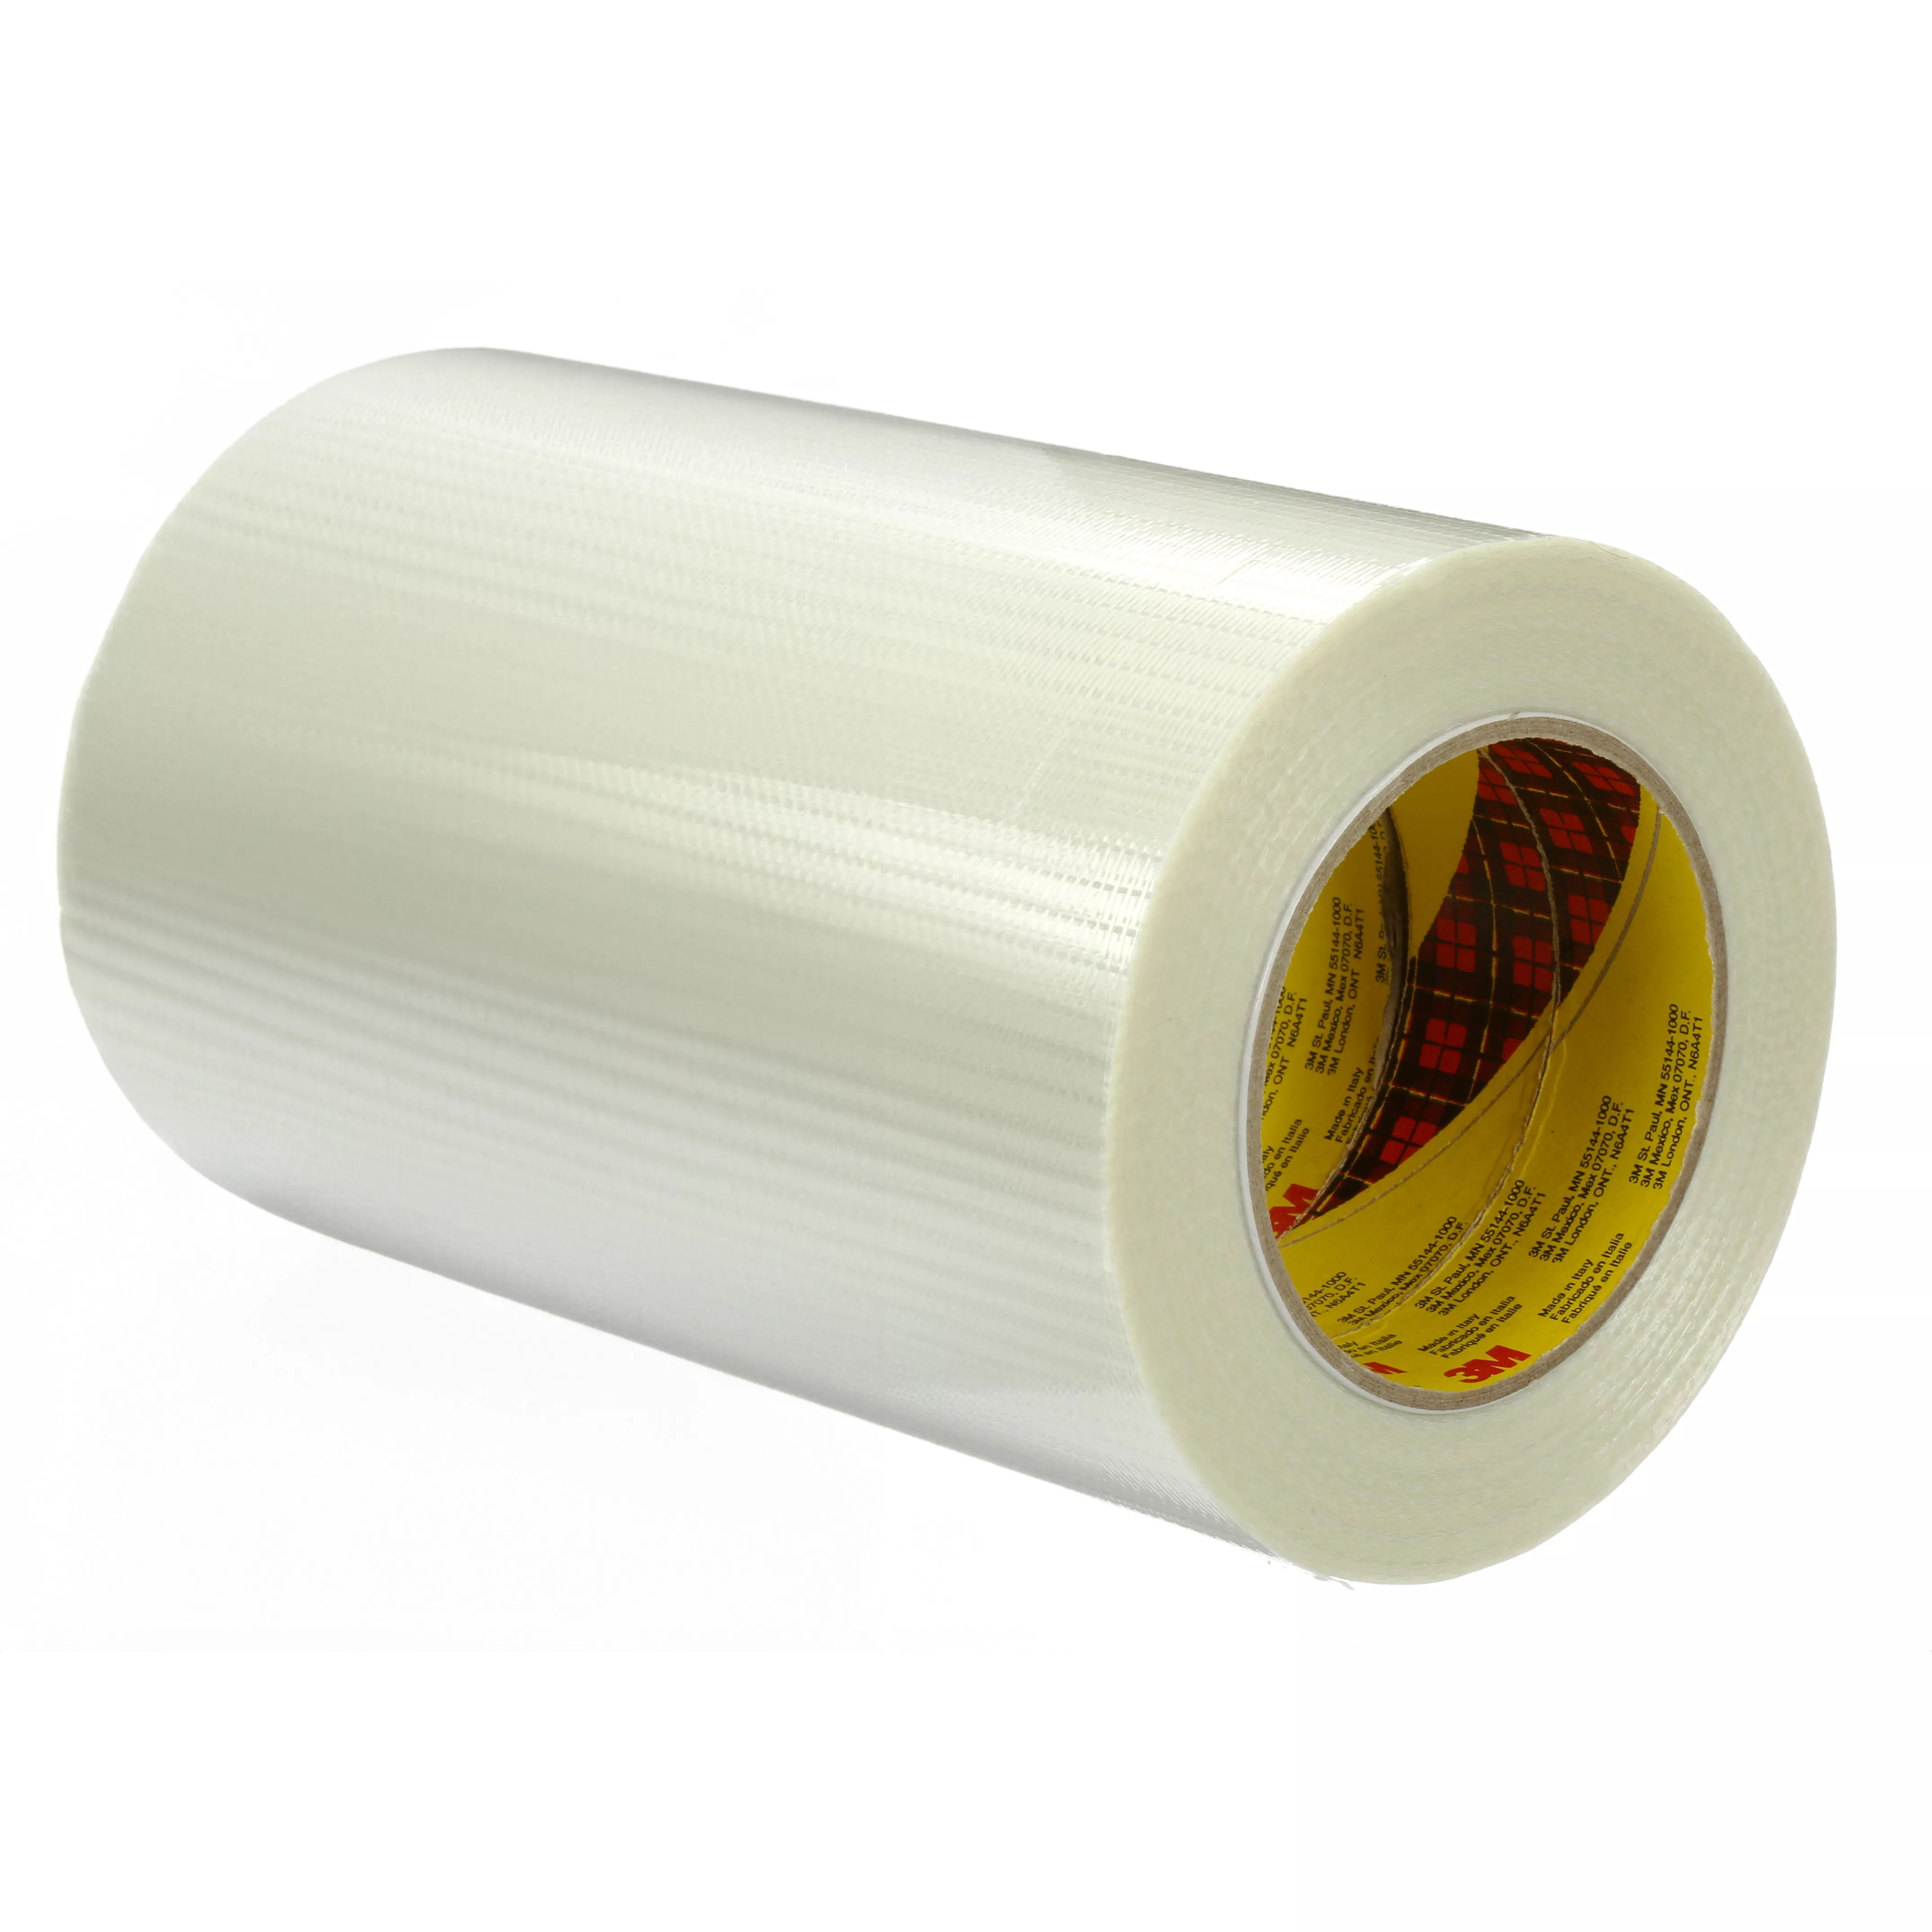 Scotch® Bi-Directional Filament Tape 8959, Transparent, 6 in x 60 yd,
8 Rolls/Case